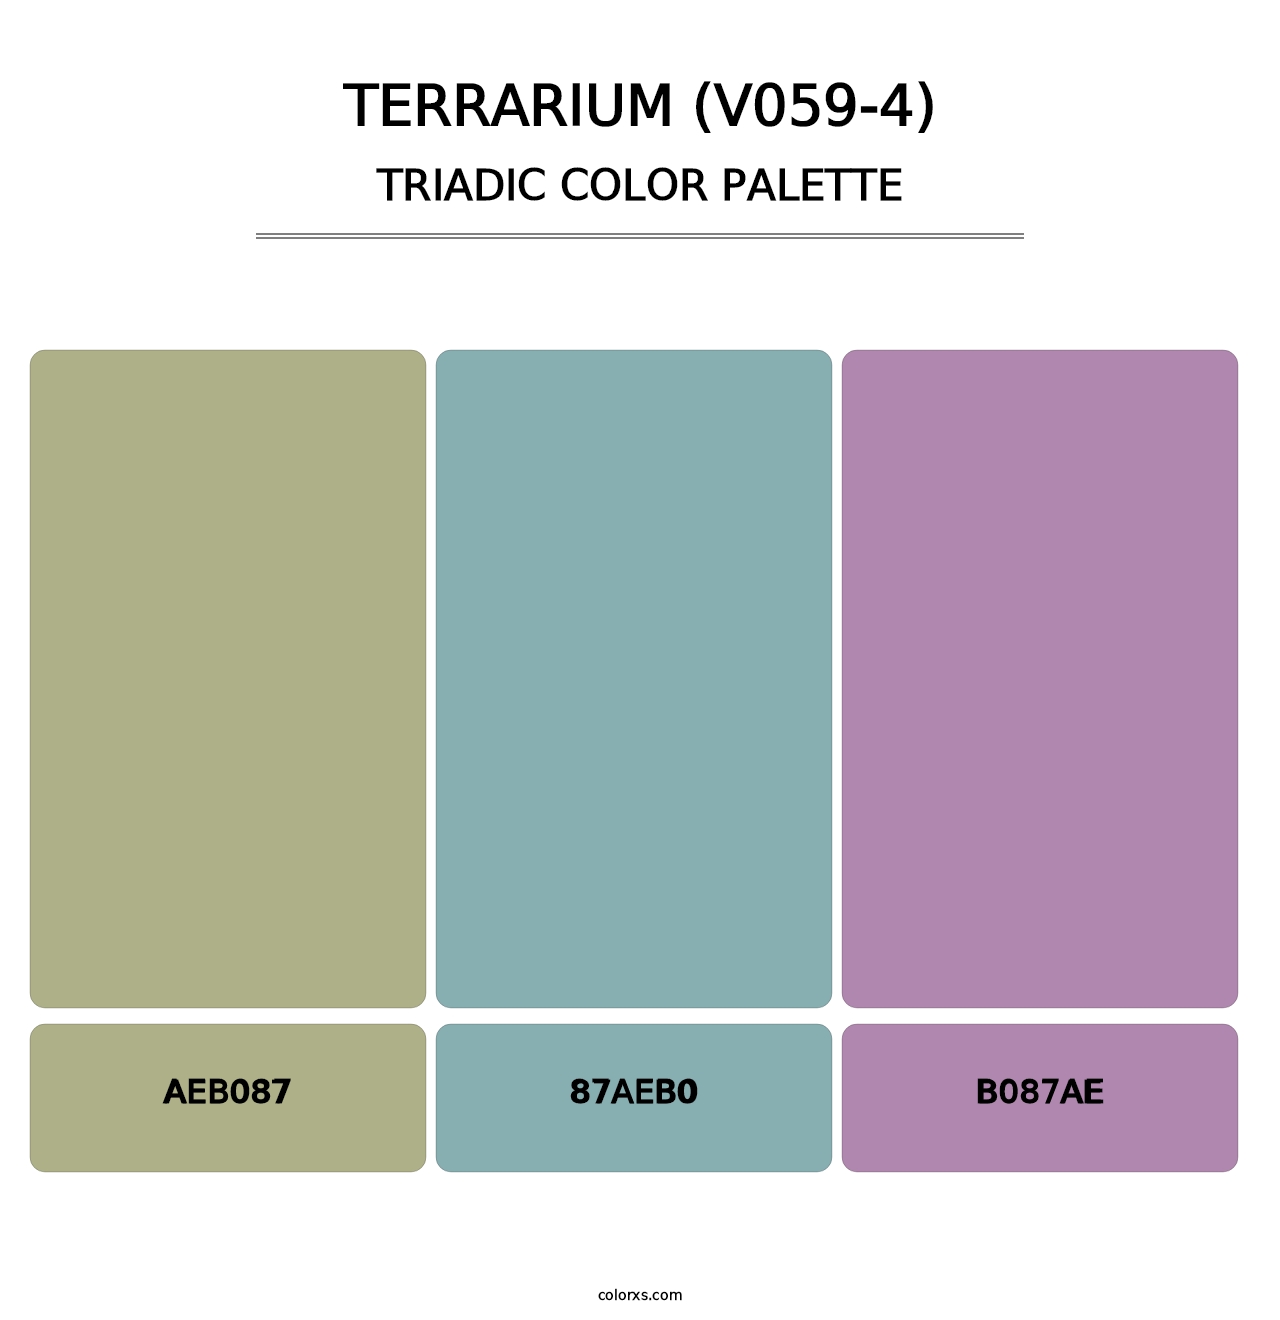 Terrarium (V059-4) - Triadic Color Palette